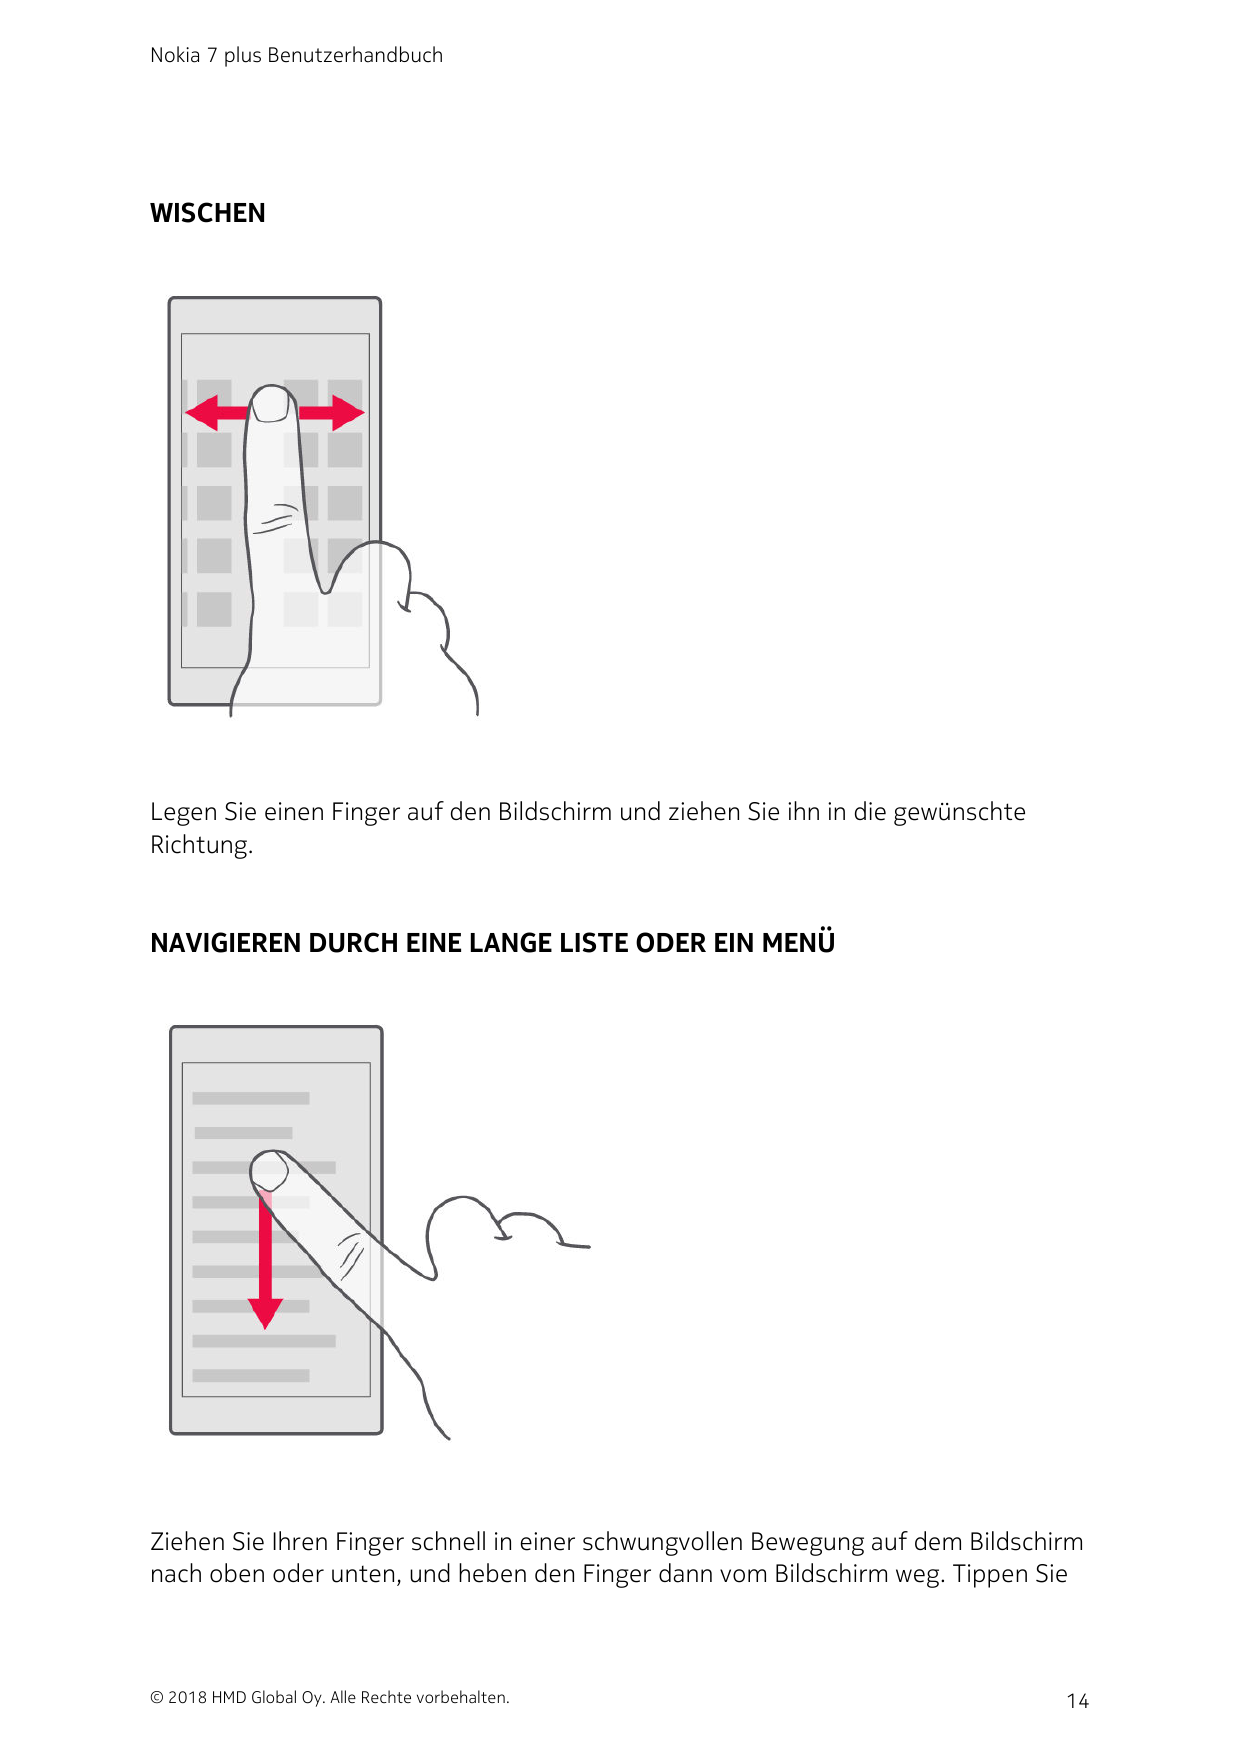 Nokia 7 plus BenutzerhandbuchWISCHENLegen Sie einen Finger auf den Bildschirm und ziehen Sie ihn in die gewünschteRichtung.NAVIG